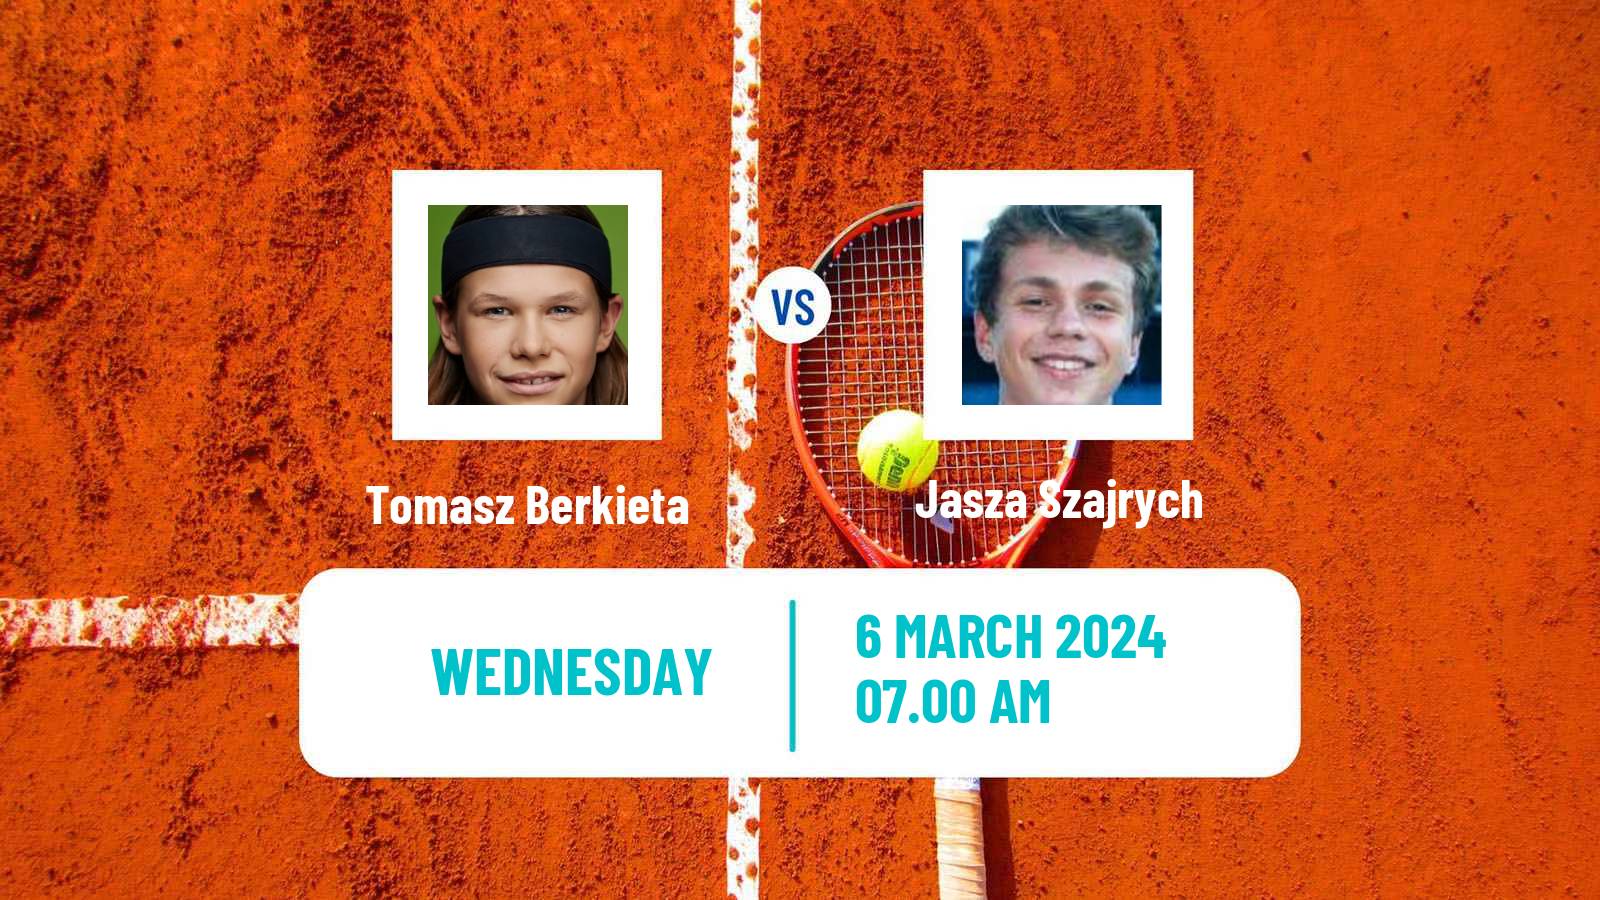 Tennis ITF M15 Sharm Elsheikh 22 Men Tomasz Berkieta - Jasza Szajrych